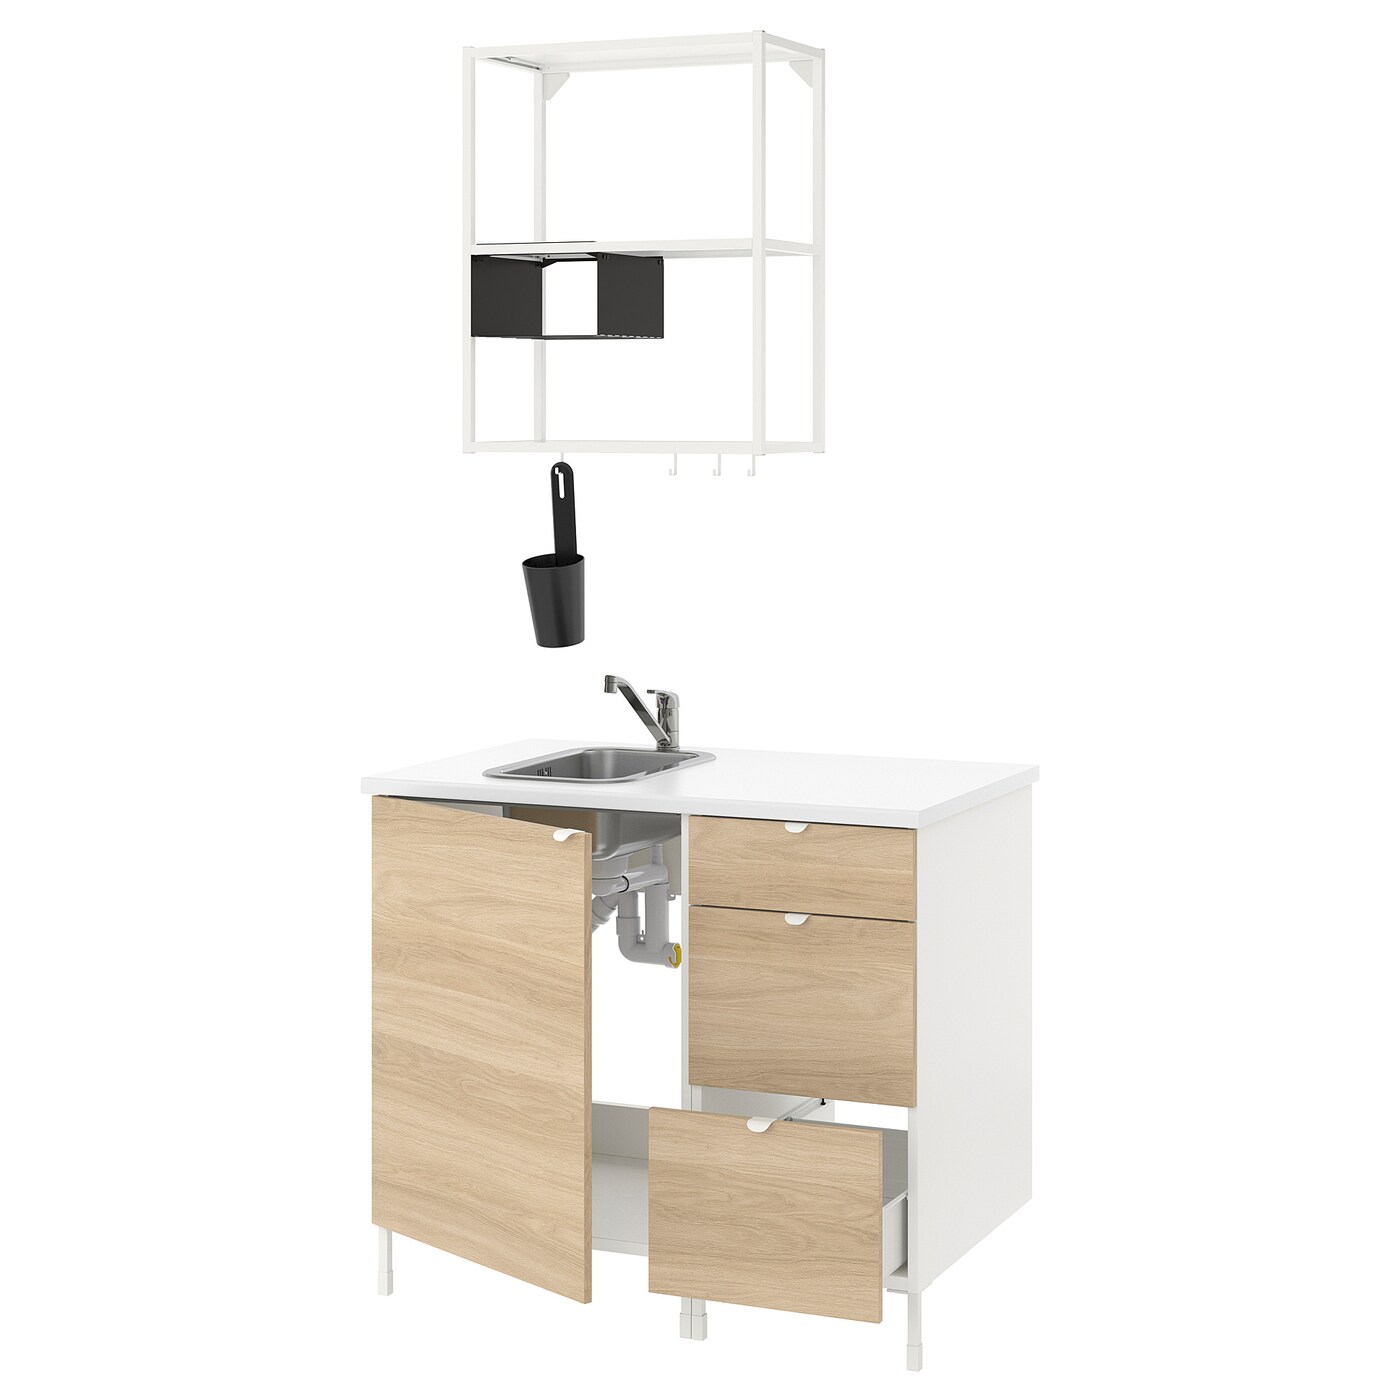 Комбинация шкафов для прачечной и кухни - ENHET  IKEA/ ЭНХЕТ ИКЕА, 103x63,5x222 см, белый/бежевый